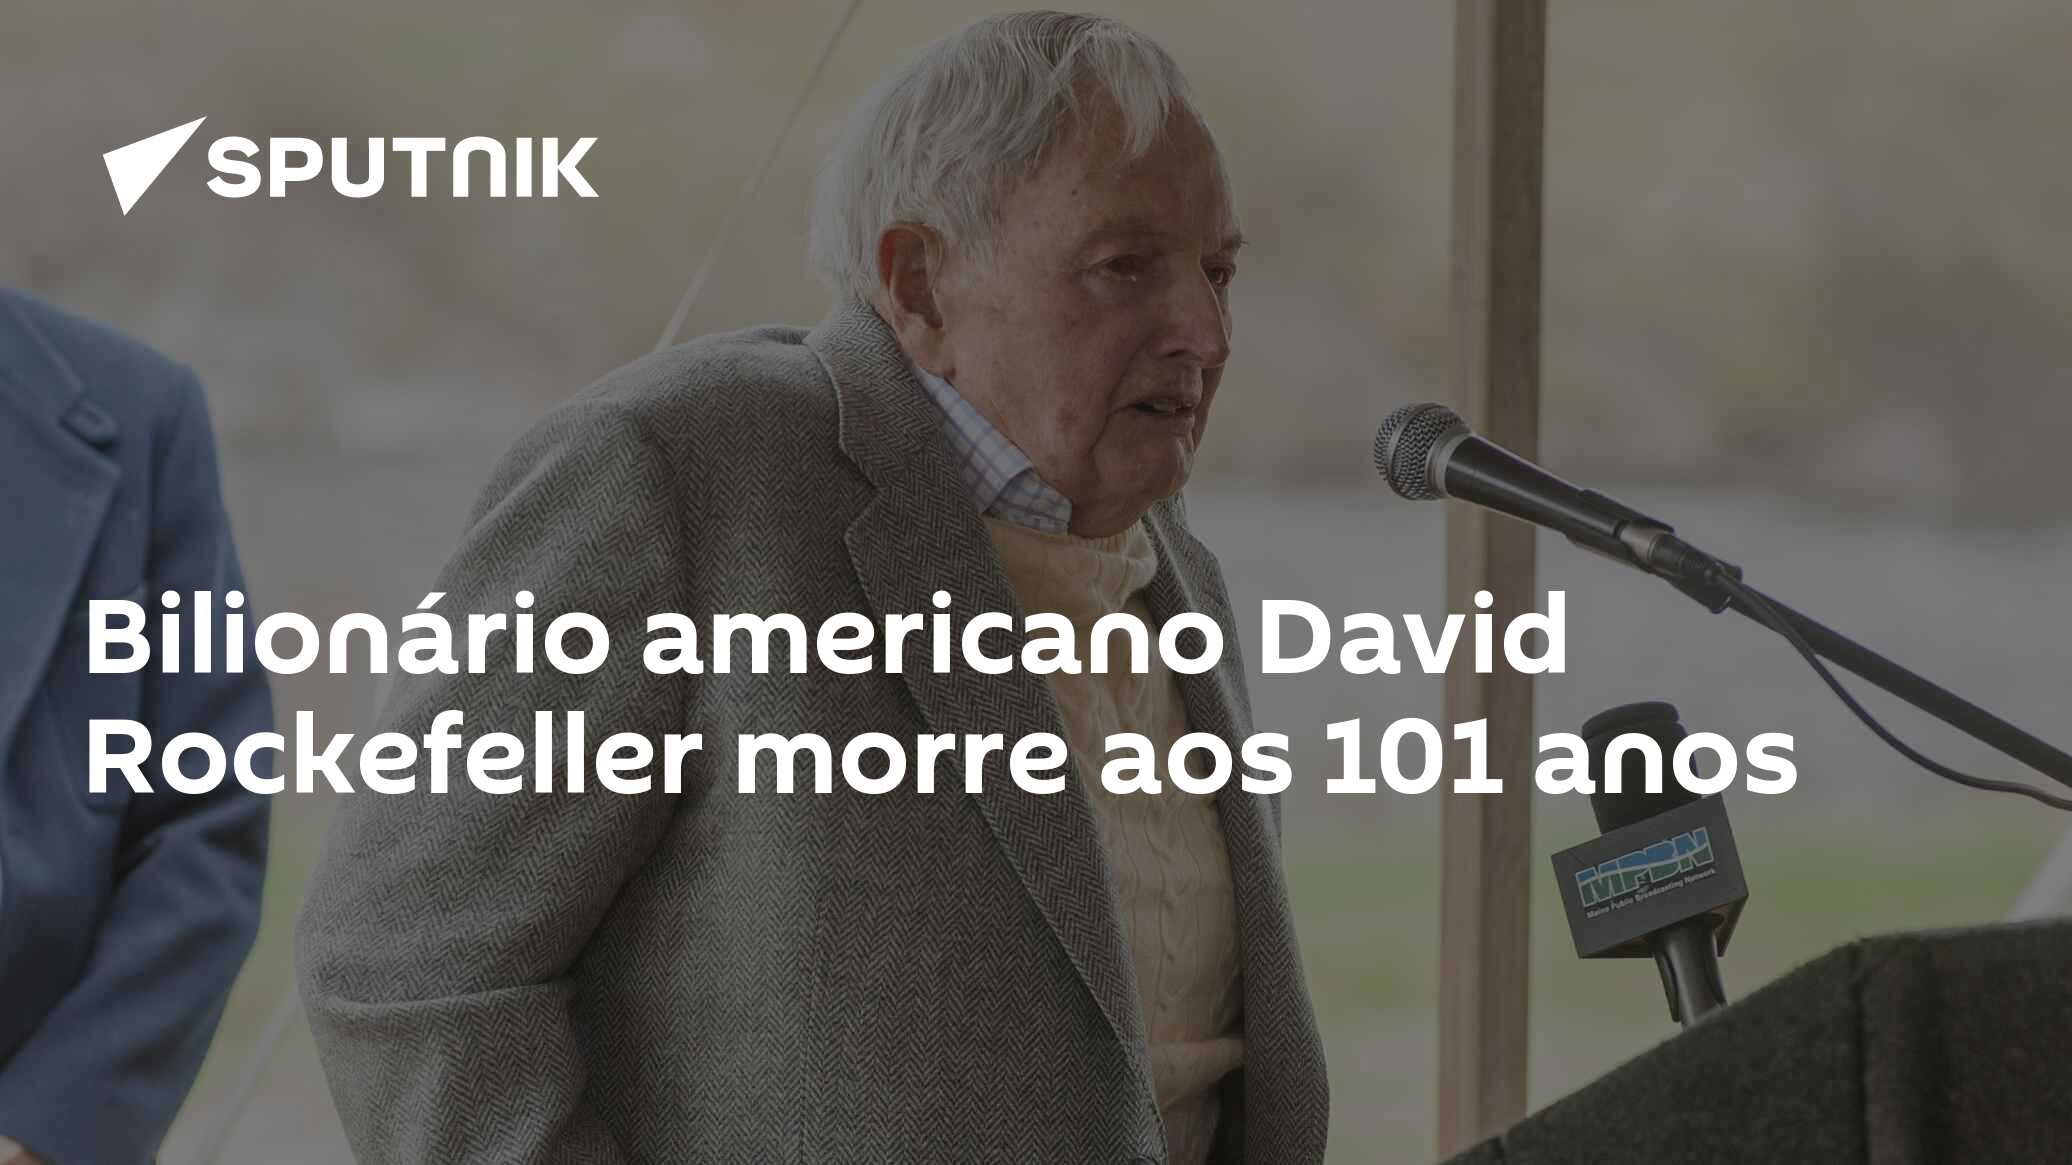 Morre aos 101 anos David Rockefeller – DW – 20/03/2017